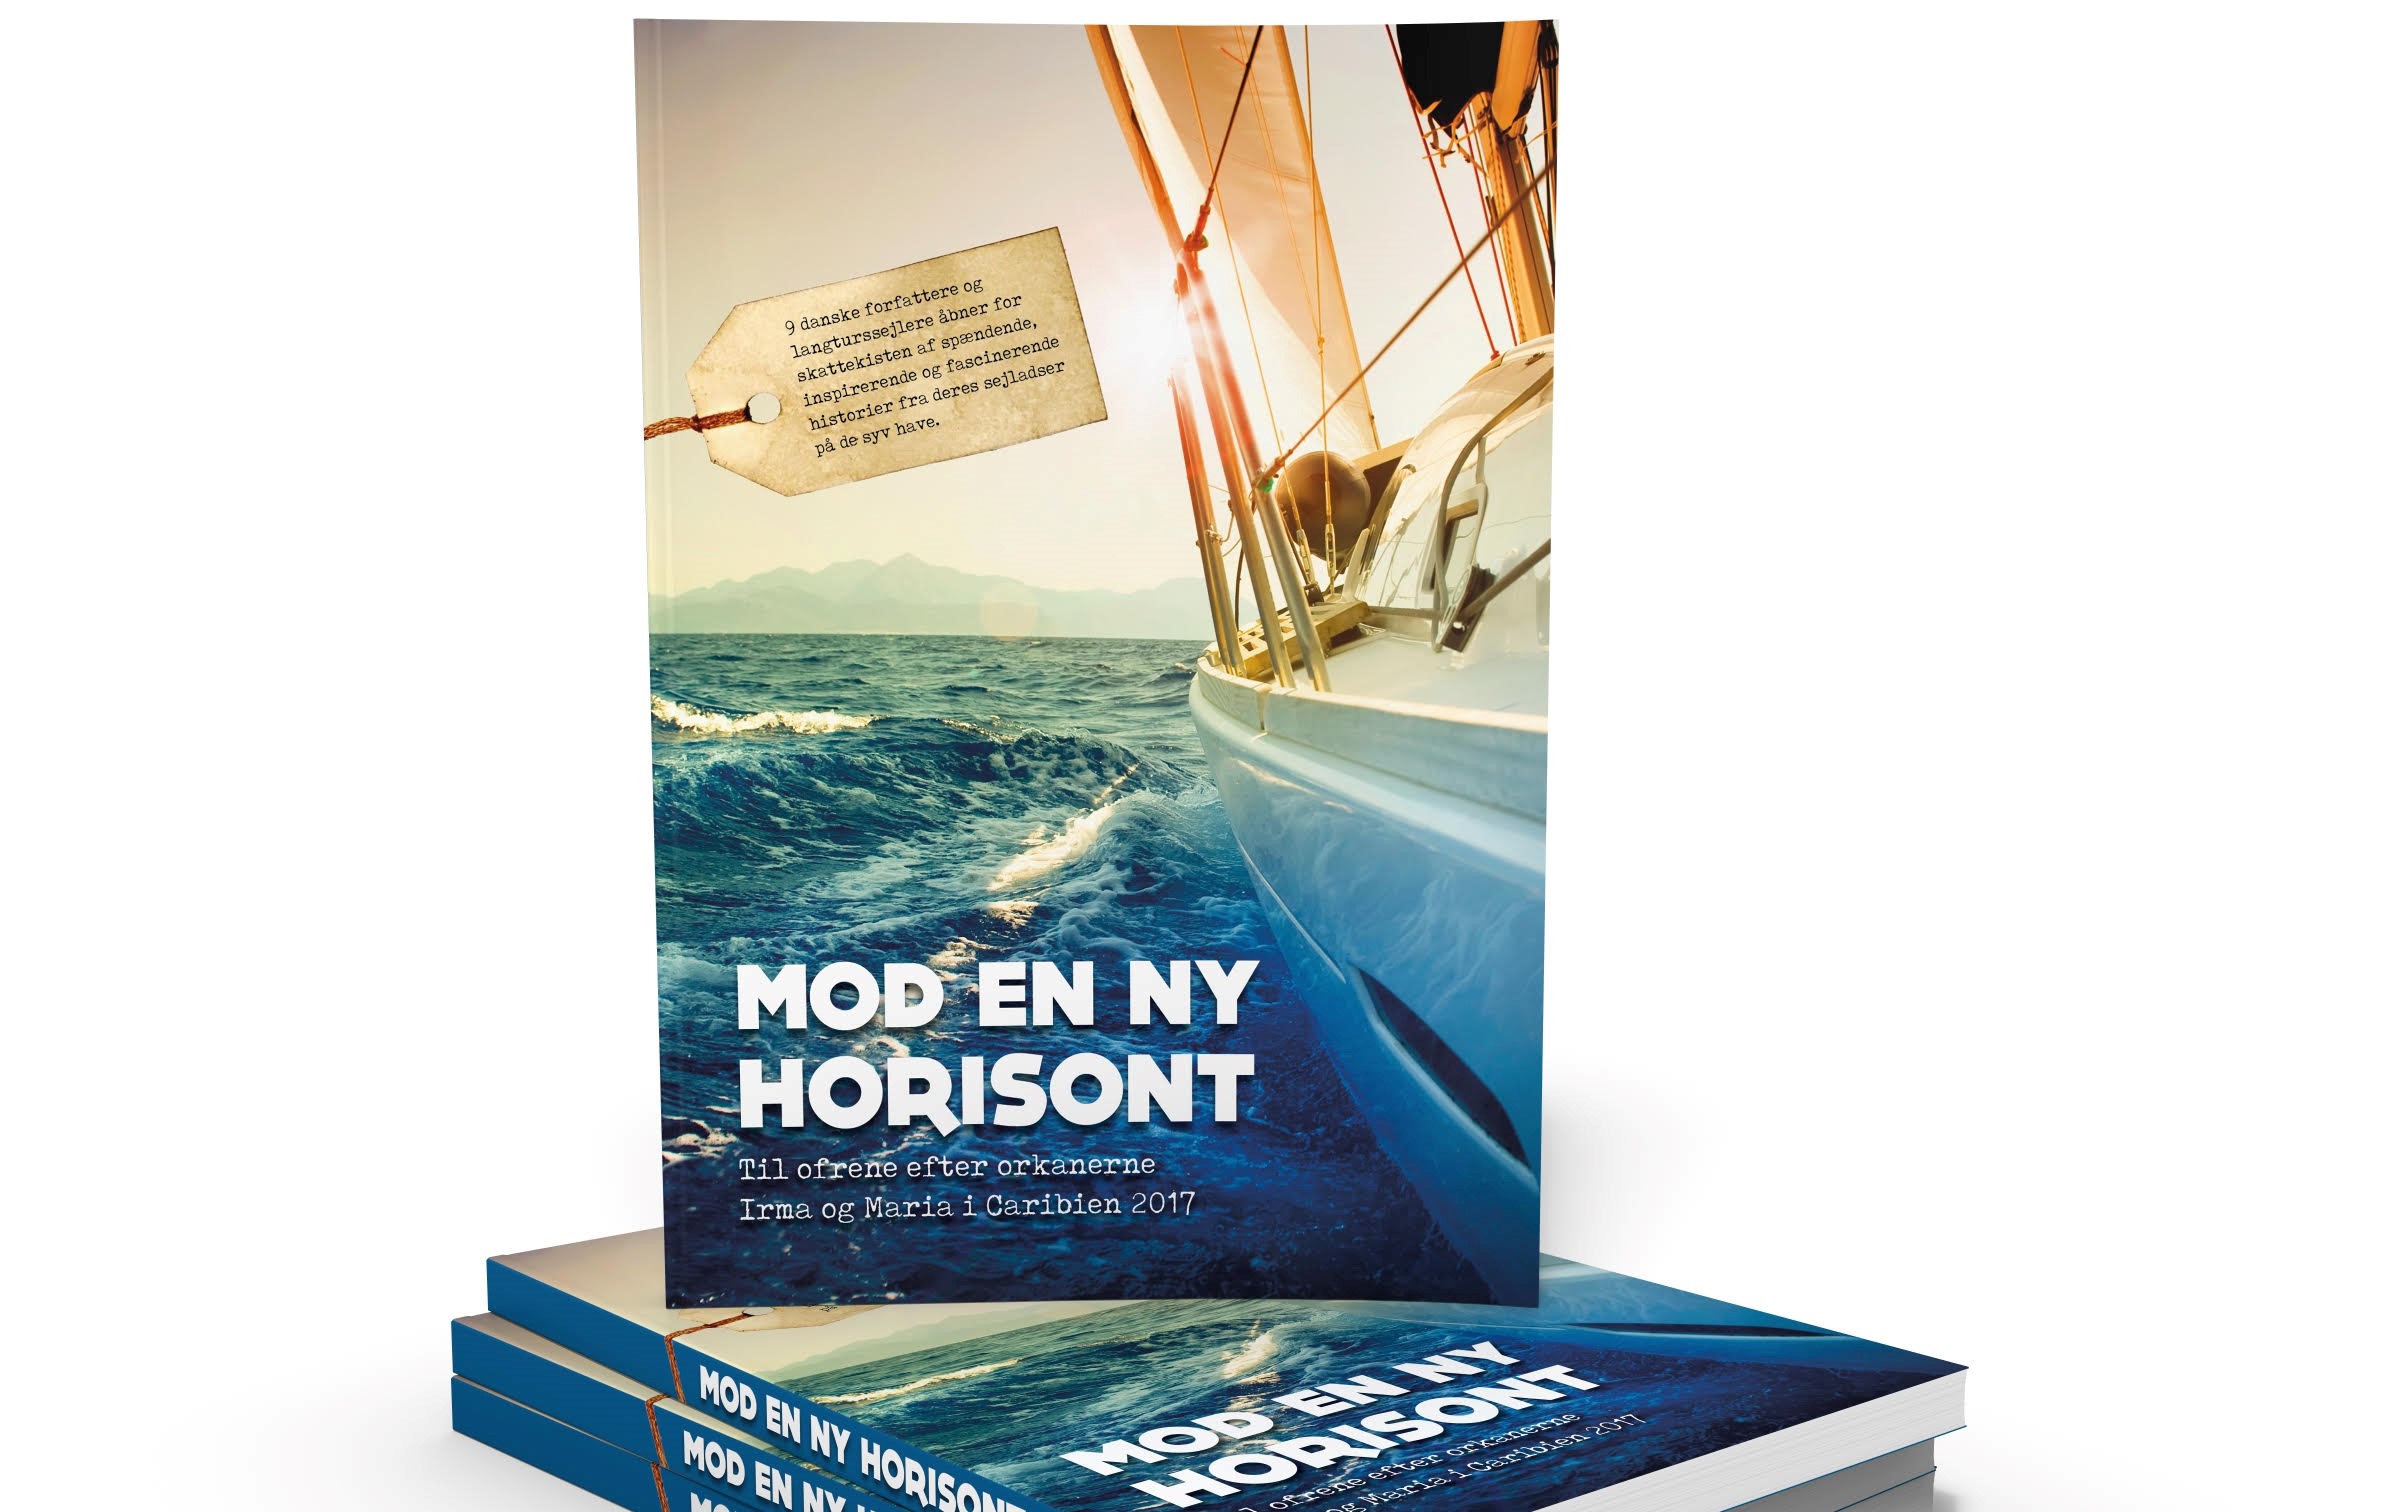 I 'Mod en ny horisont' åbner en række danske forfattere og langturssejlere for skattekisten af spændende, inspirerende og fascinerende historier fra de syv have.